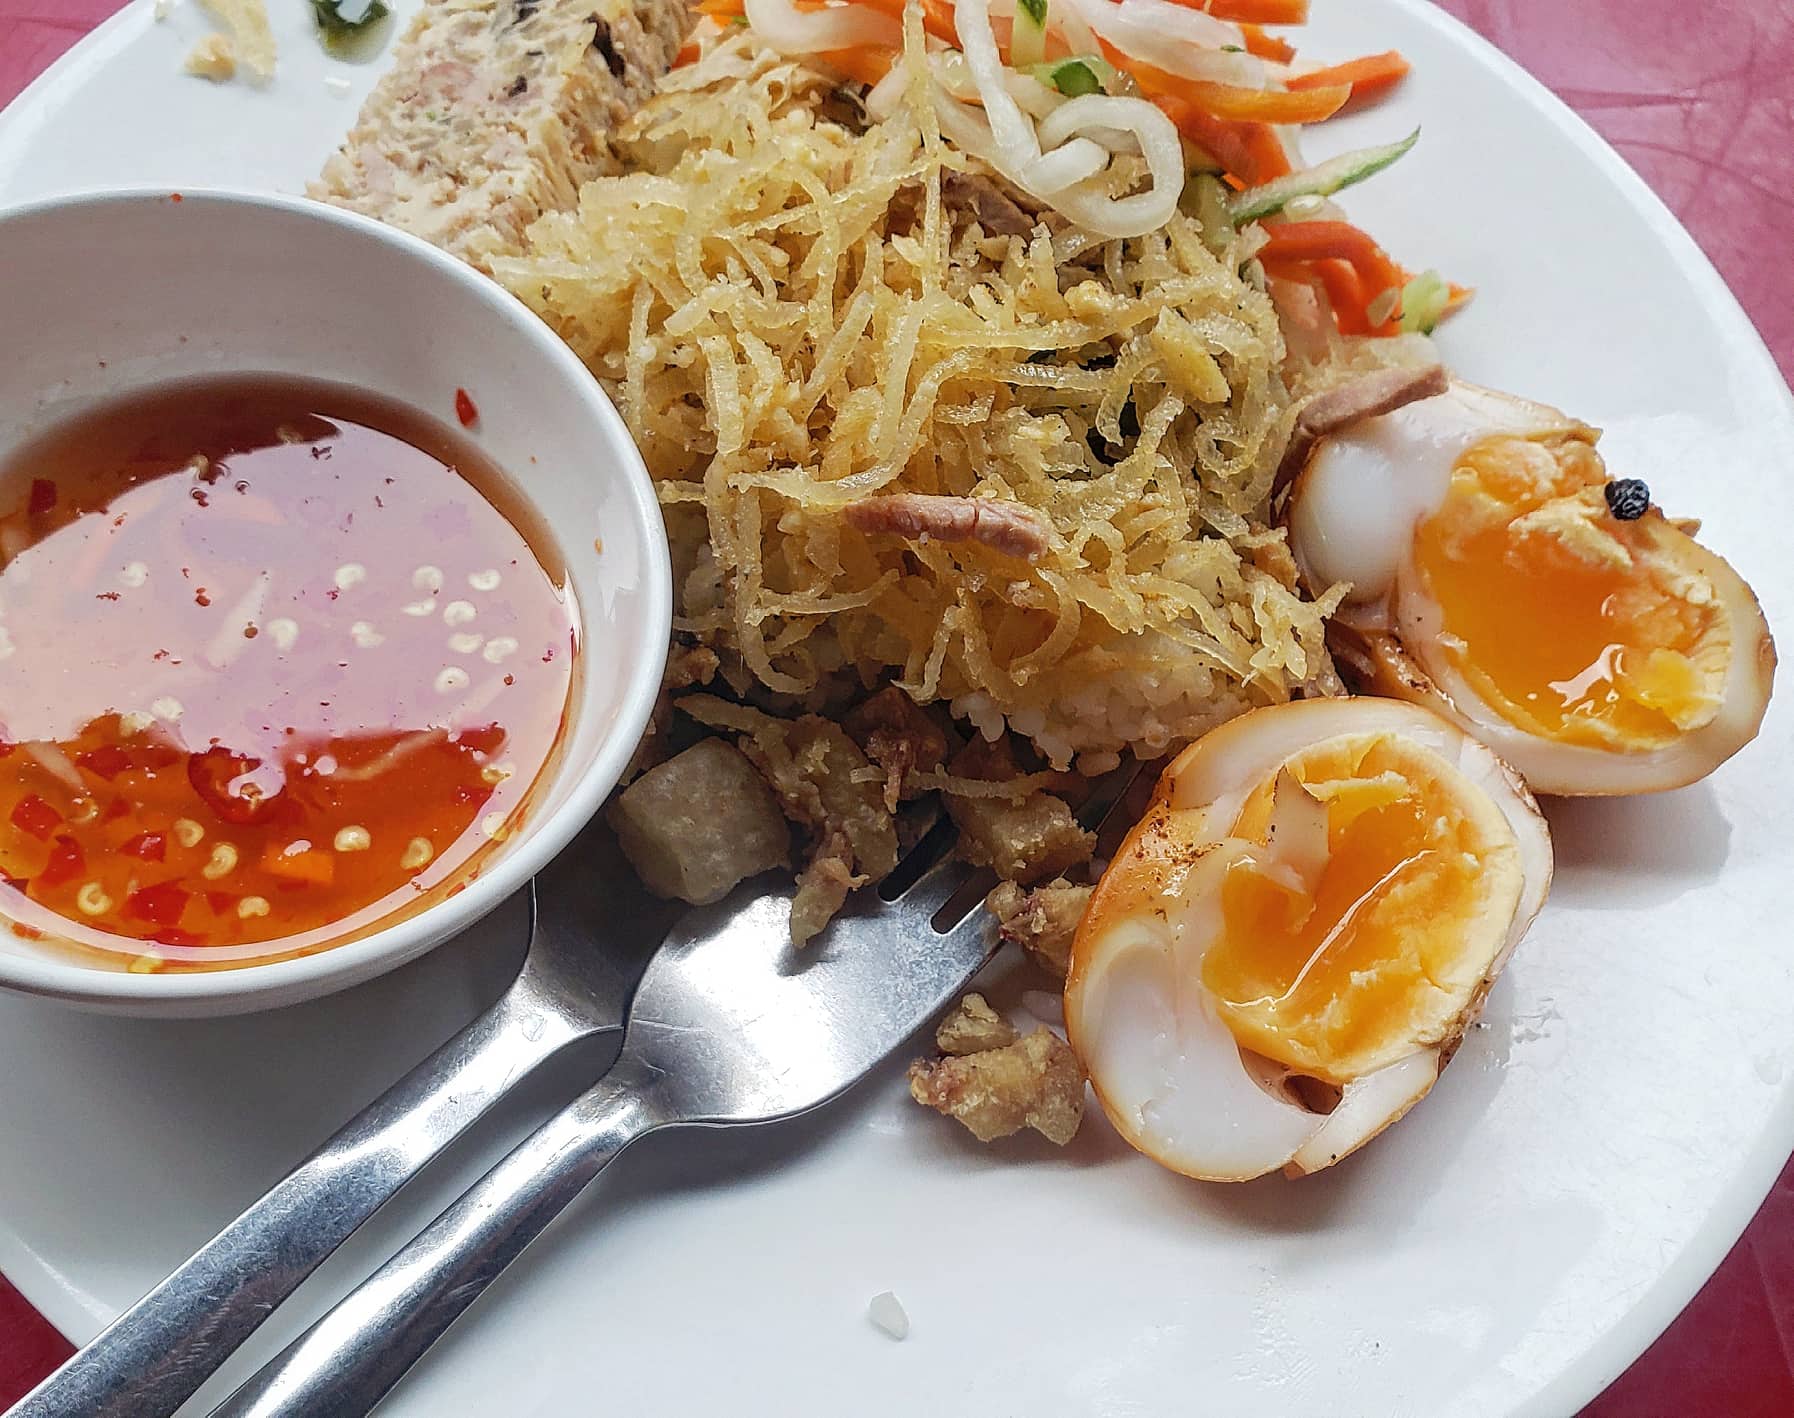 Tôi từng ăn cơm tấm Sài Gòn để bớt... đói - Ảnh 4.